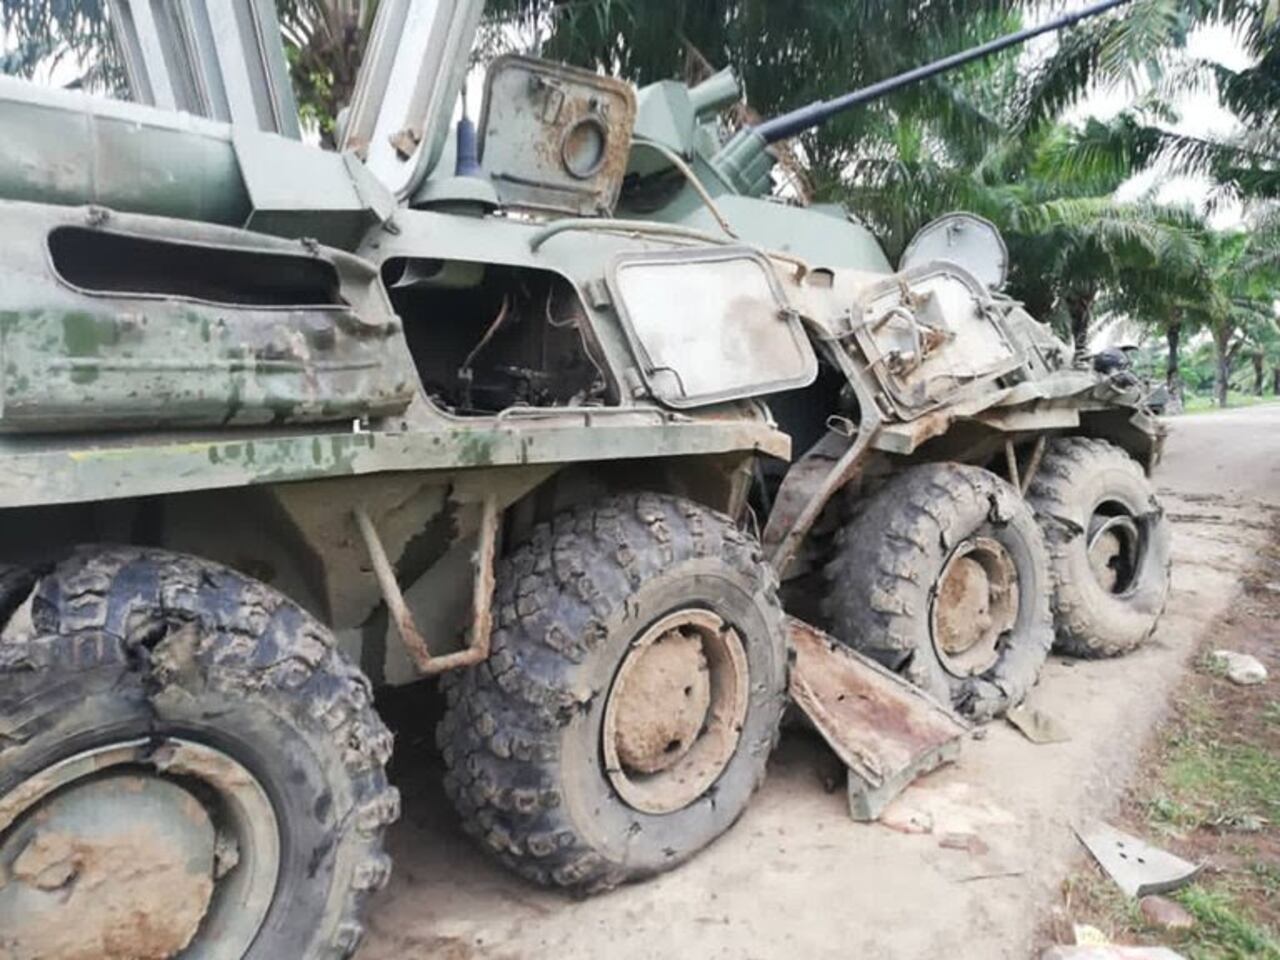 En la emboscada un vehículo de infantería mecanizada de fabricación rusa BTR-80A fue impactado por RPG "quedando inutilizado y quedando heridos con traumatismos, contusiones, esquirlas y aturdimiento” cinco militares venezolanos.